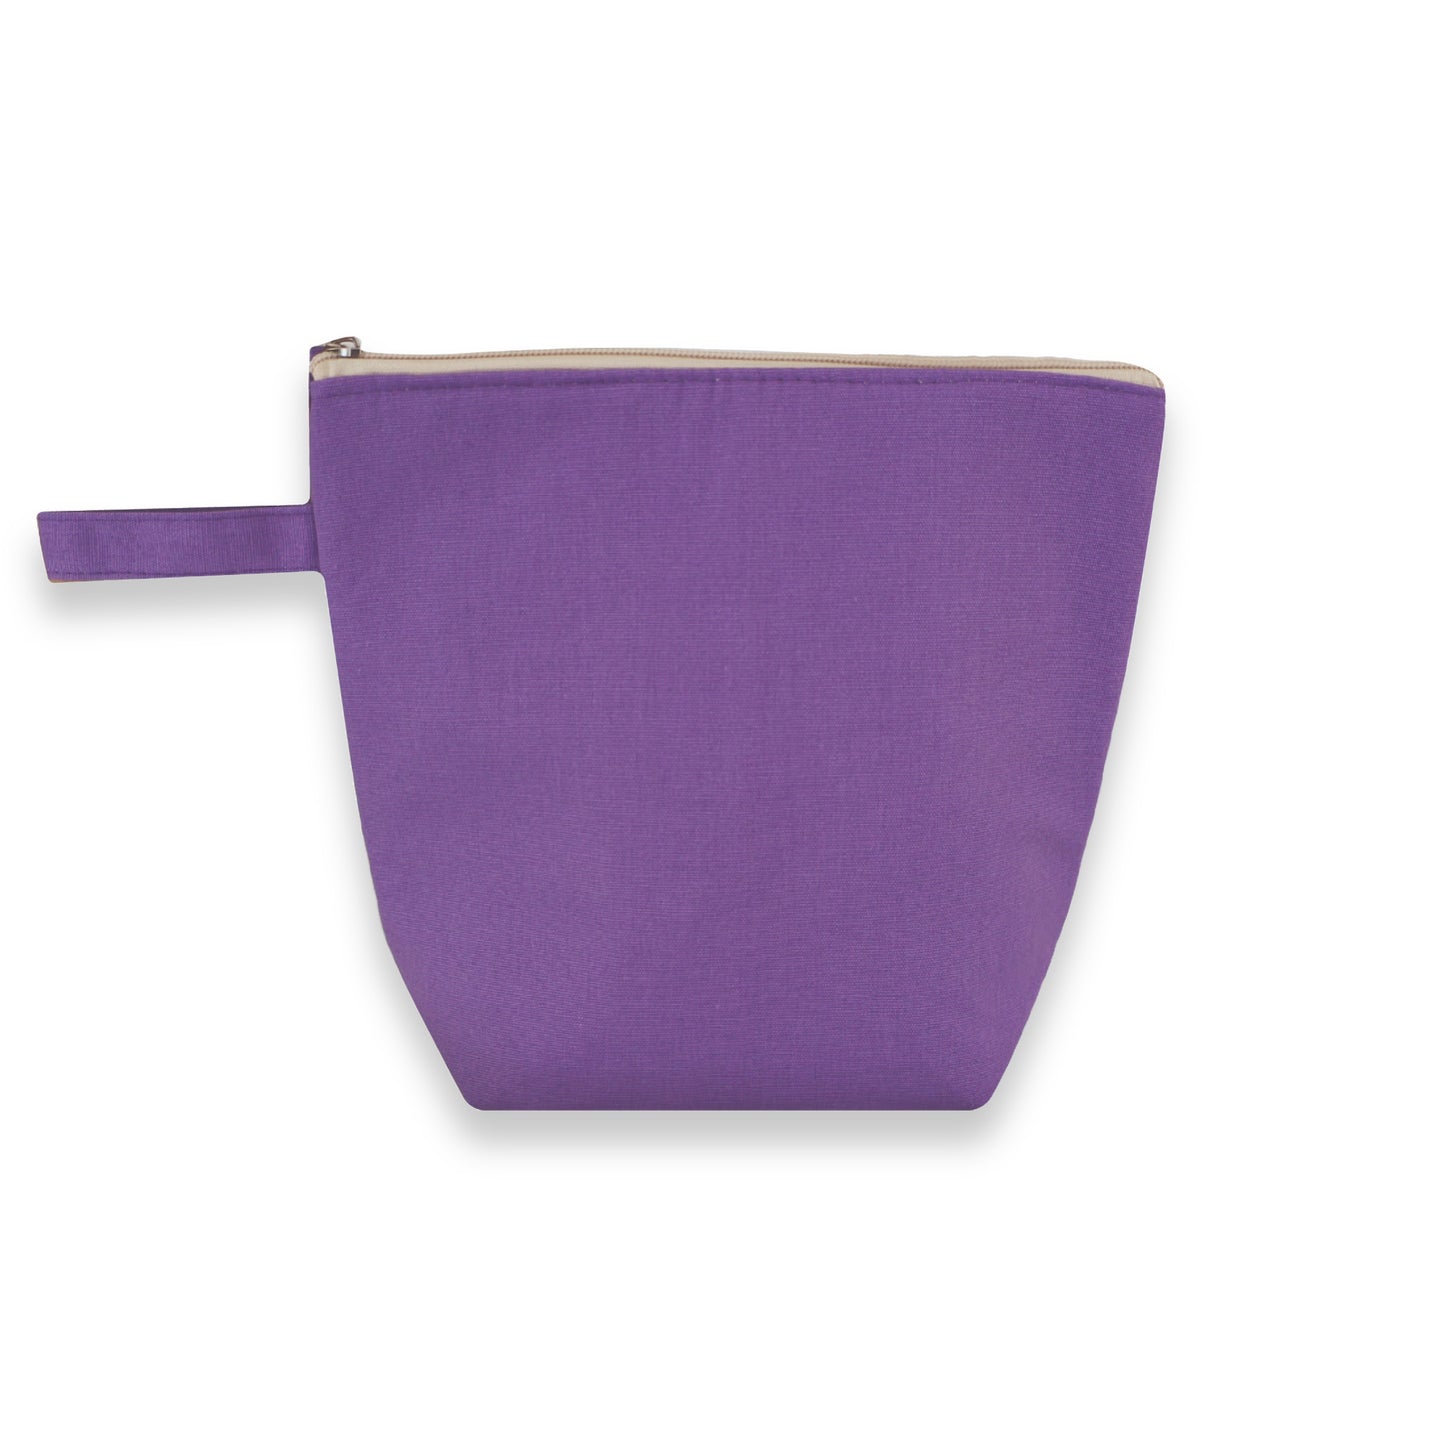 Cooler bag in purple.